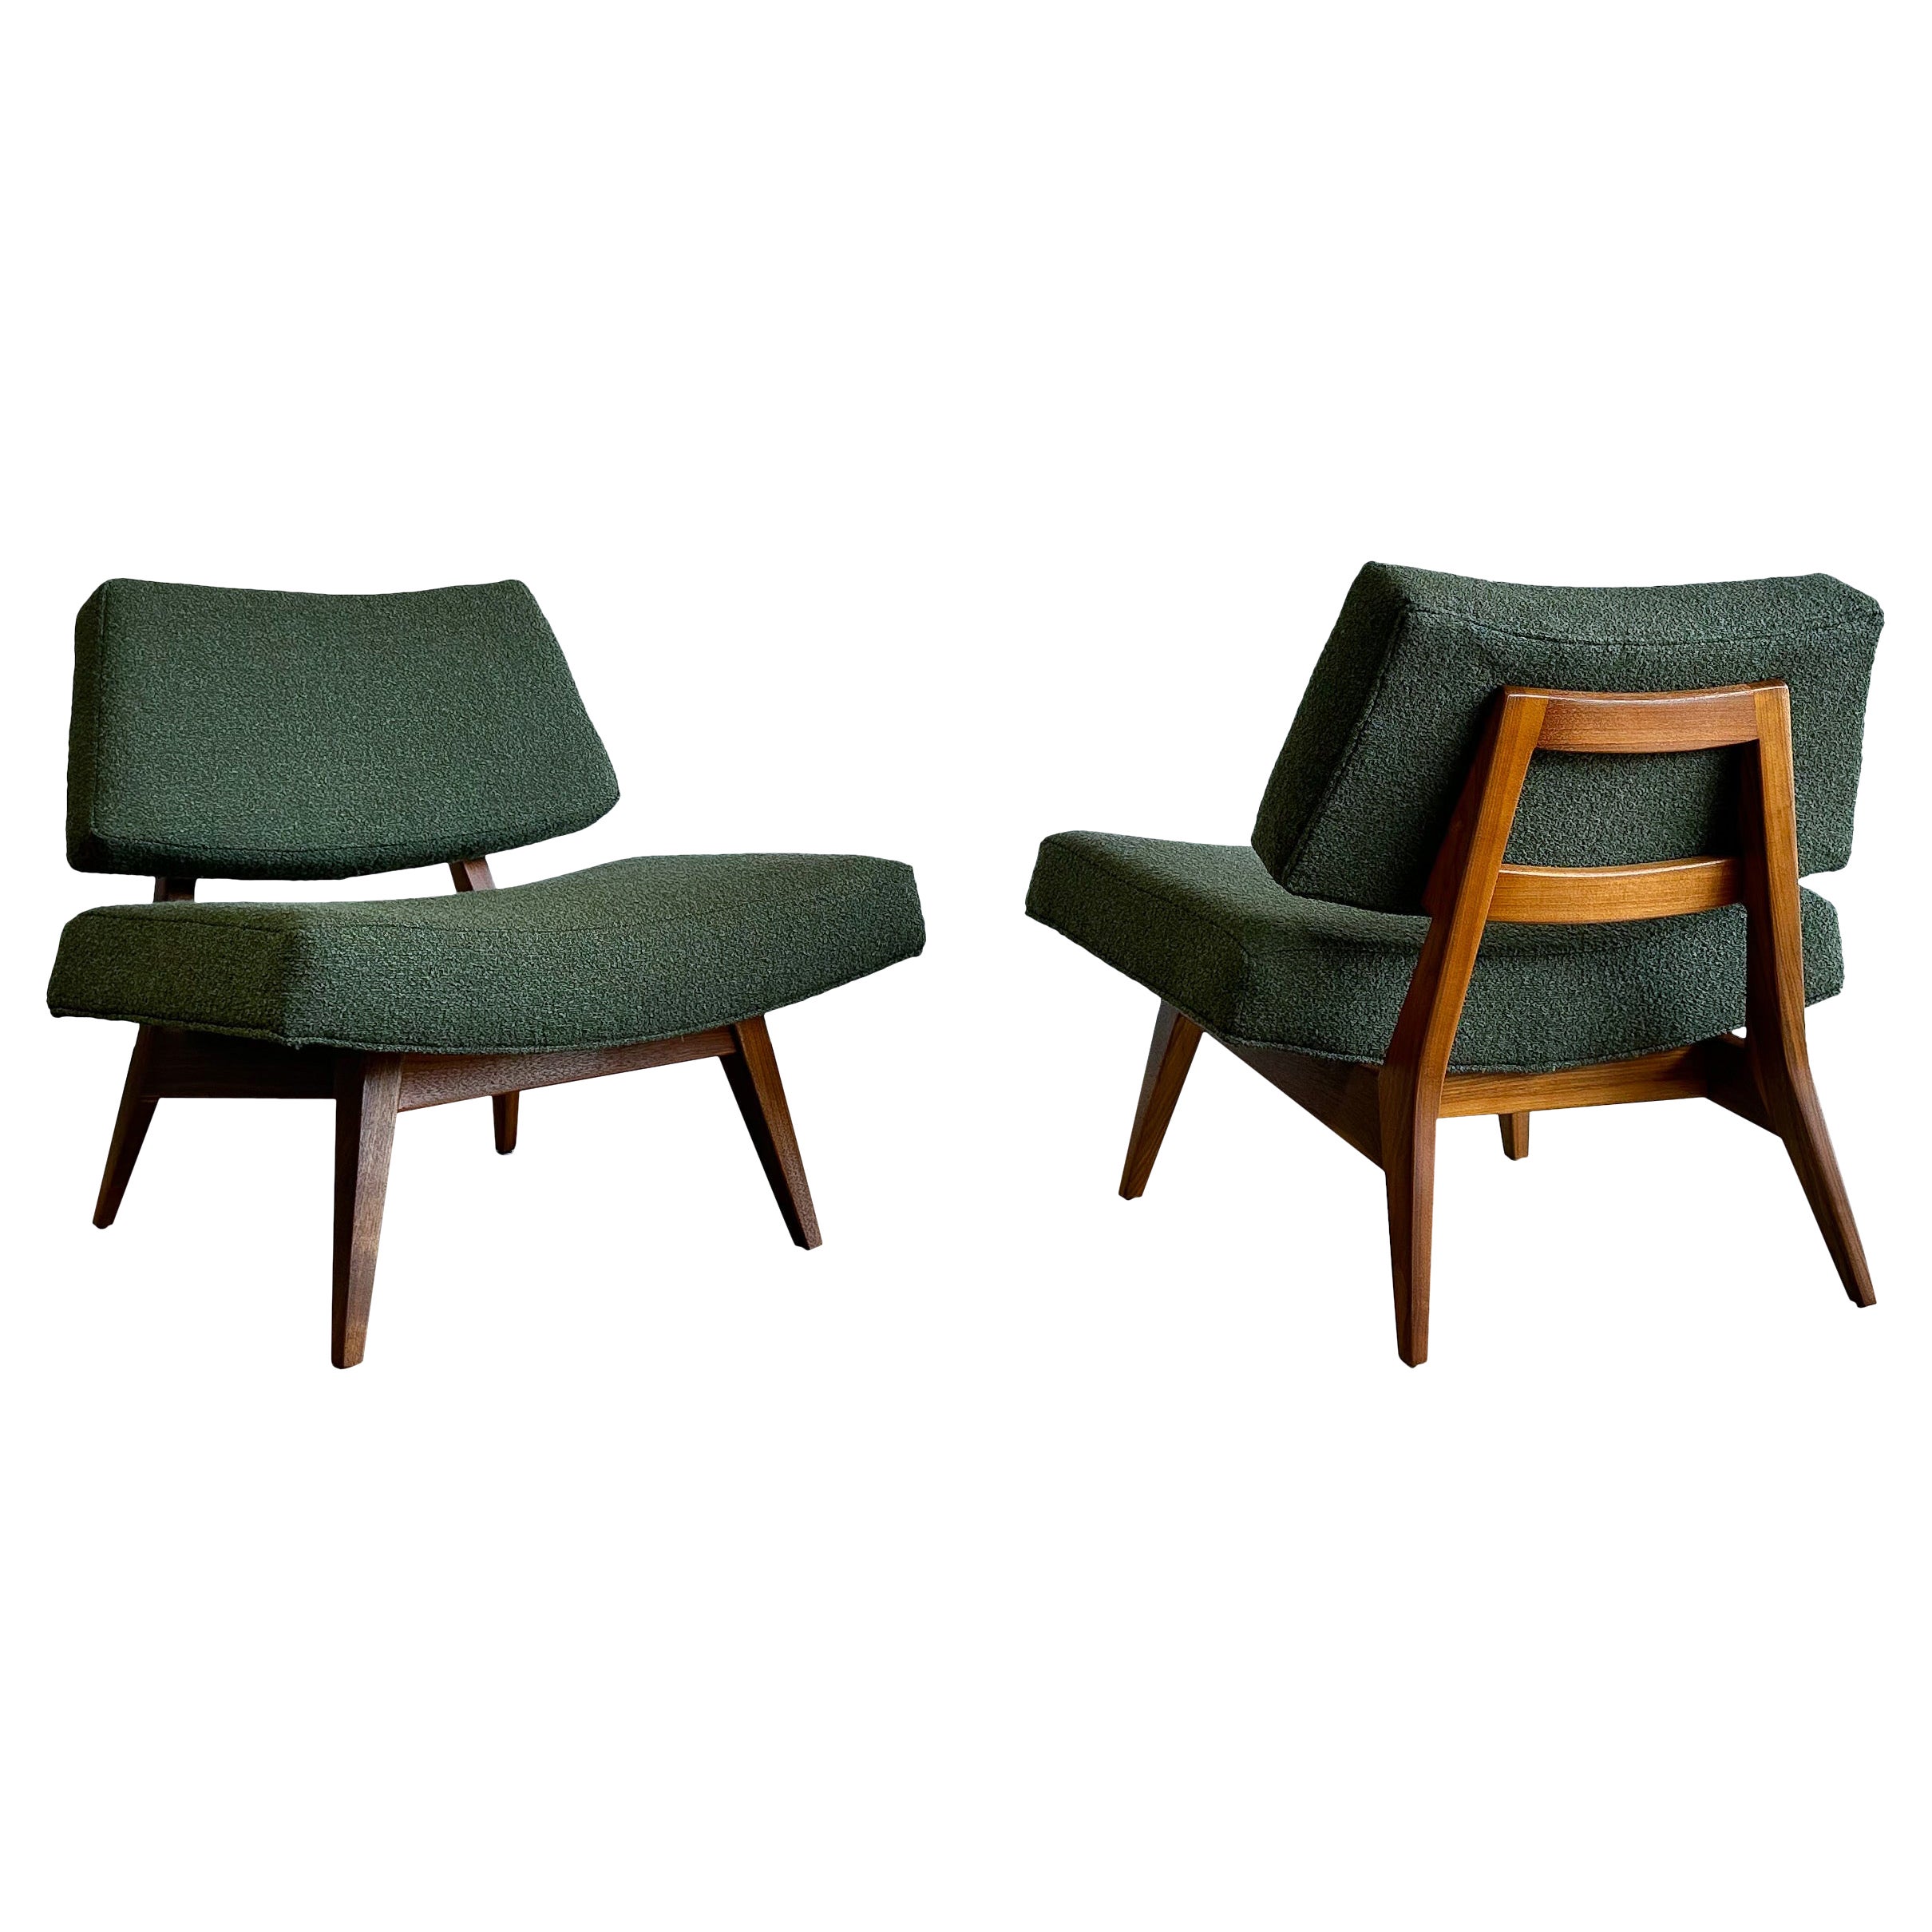 Rare Jens Risom Lounge Chairs, Model U-416, Walnut and Bouclé, 1950s For Sale